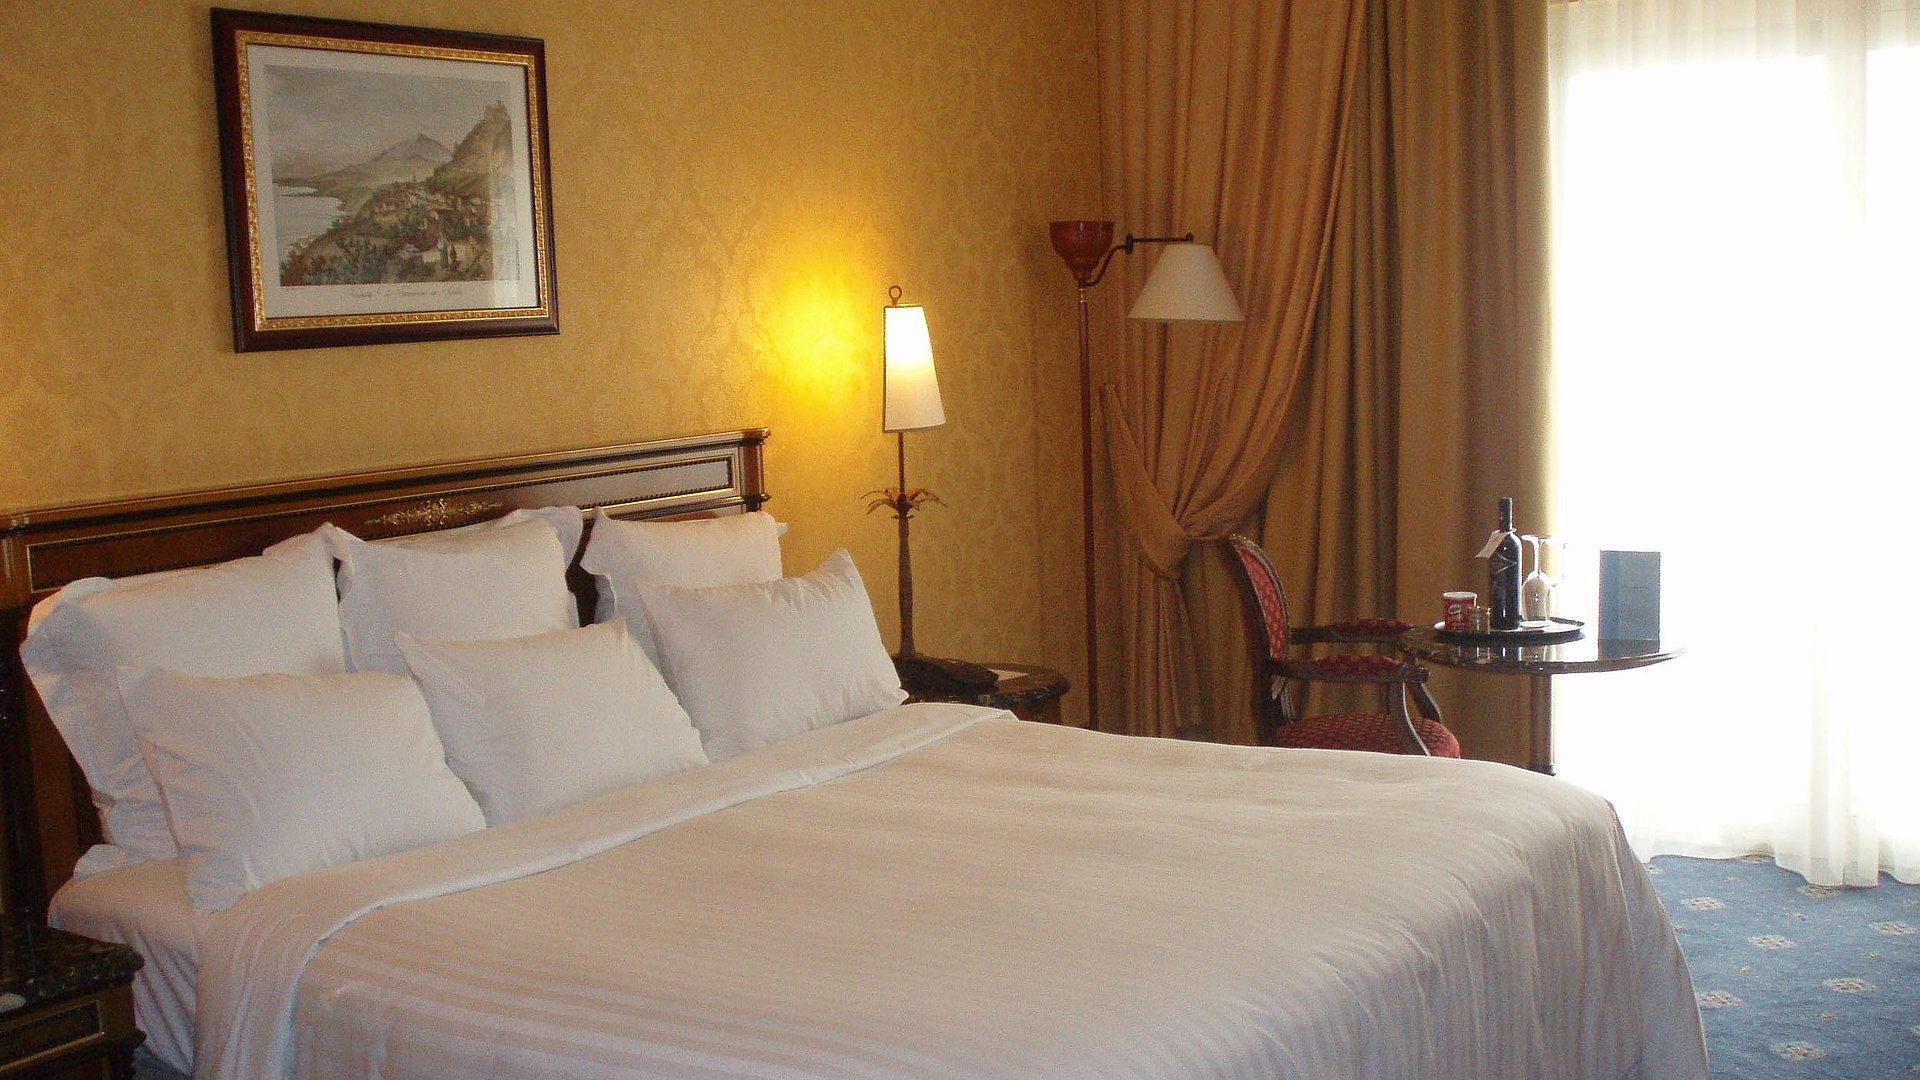 Übernachten im Video Unterfranken - sehr ordentliches Hotelzimmer mit großem Bett, warmer Nachtlampe und mittelgroßem Wandgemälde